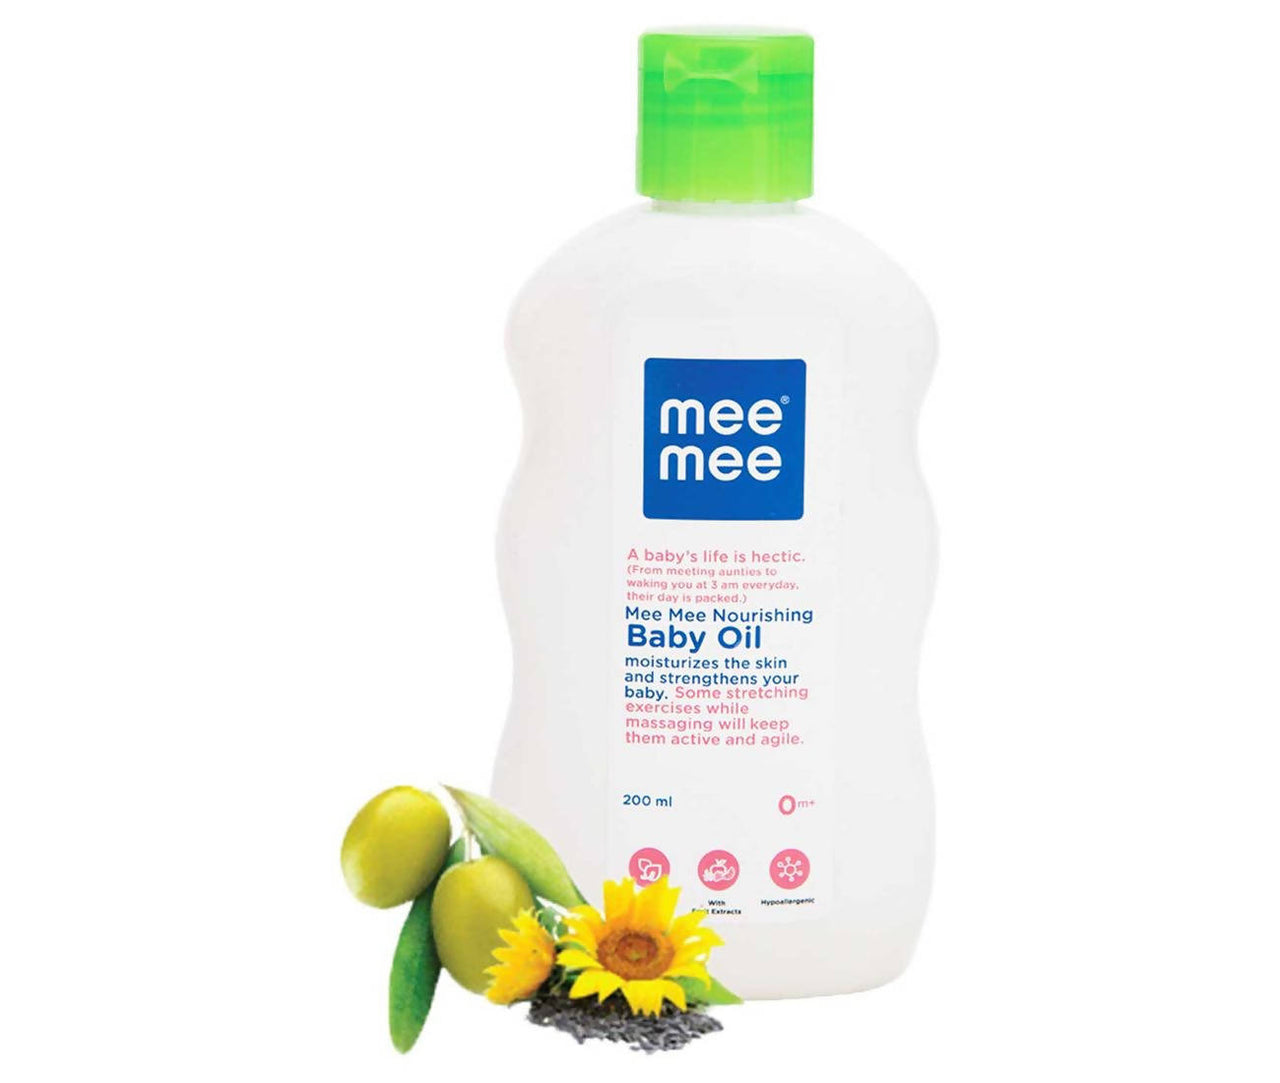 Mee Mee Nourishing Baby Oil